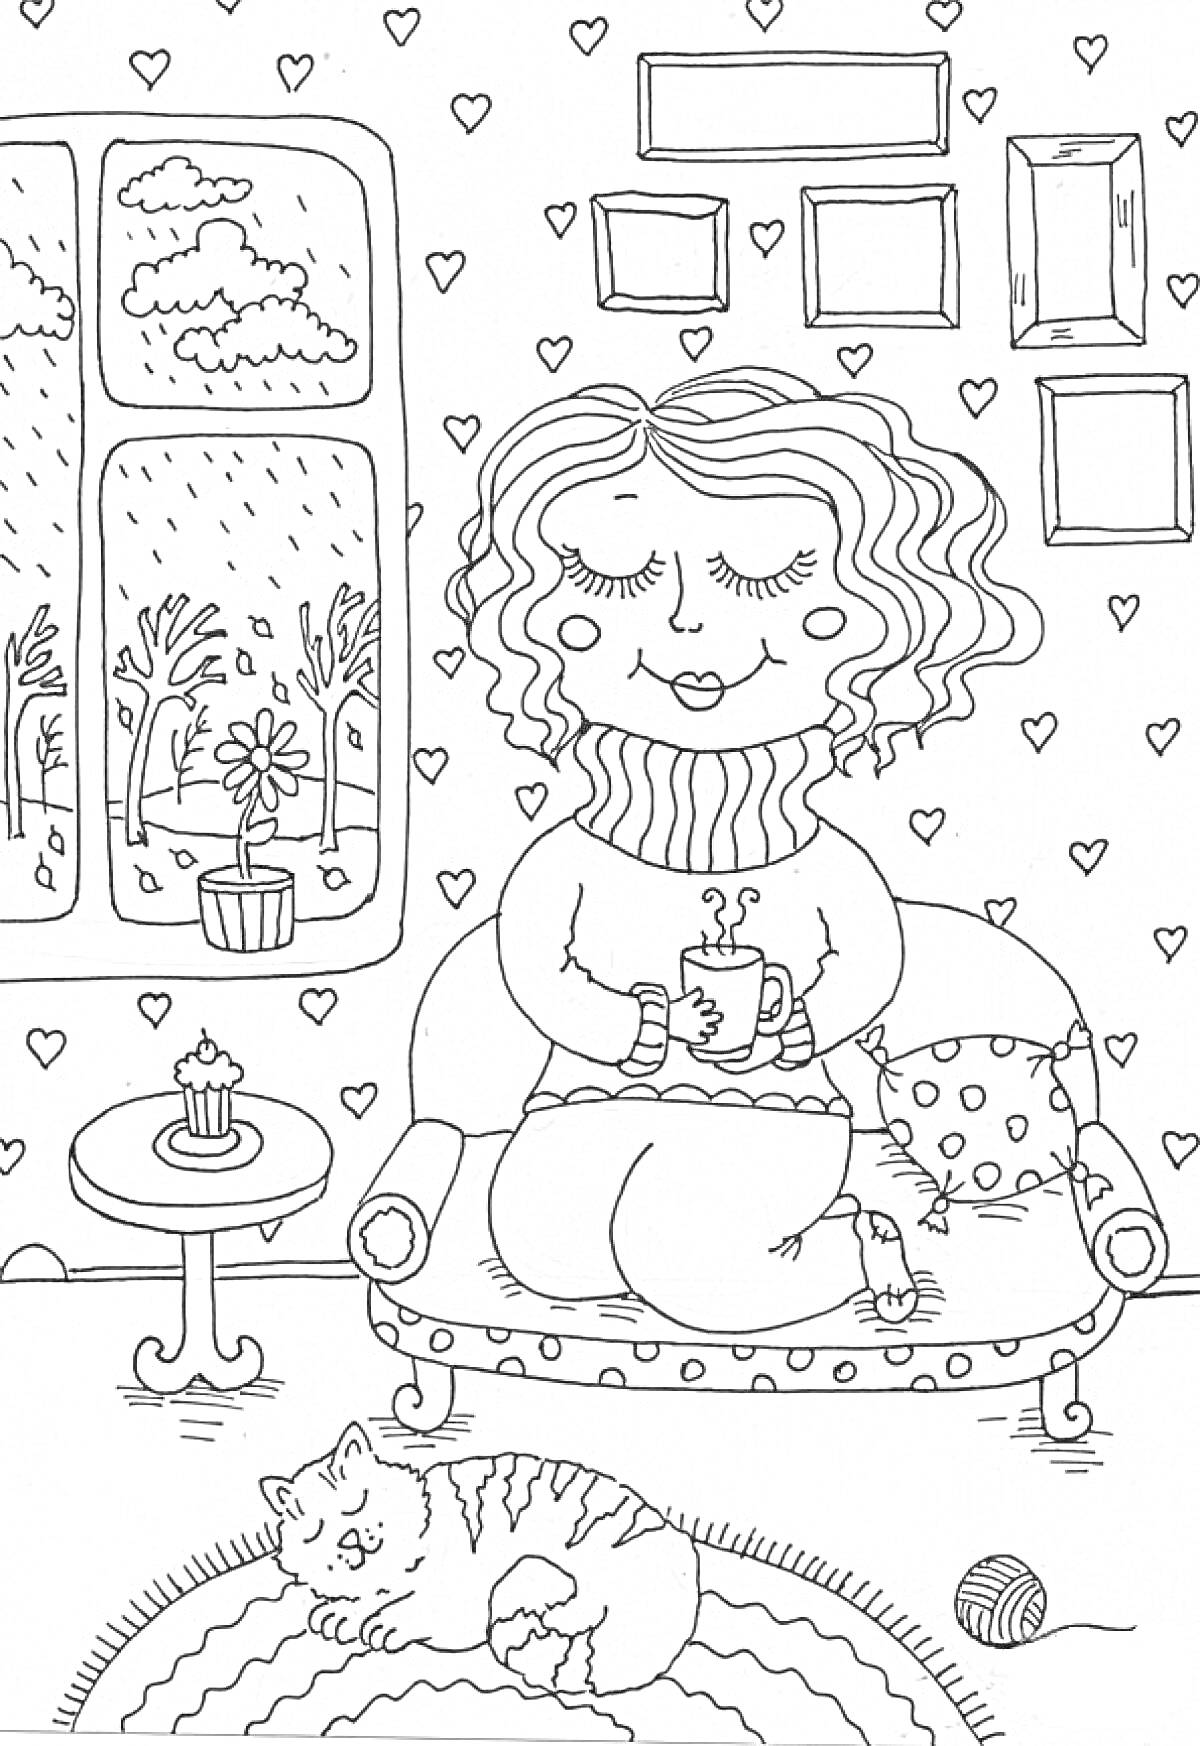 Осенний уют - женщина на диване с чашкой, кот на коврике, вид из окна с деревьями и дождем, столик с кексом, подушка